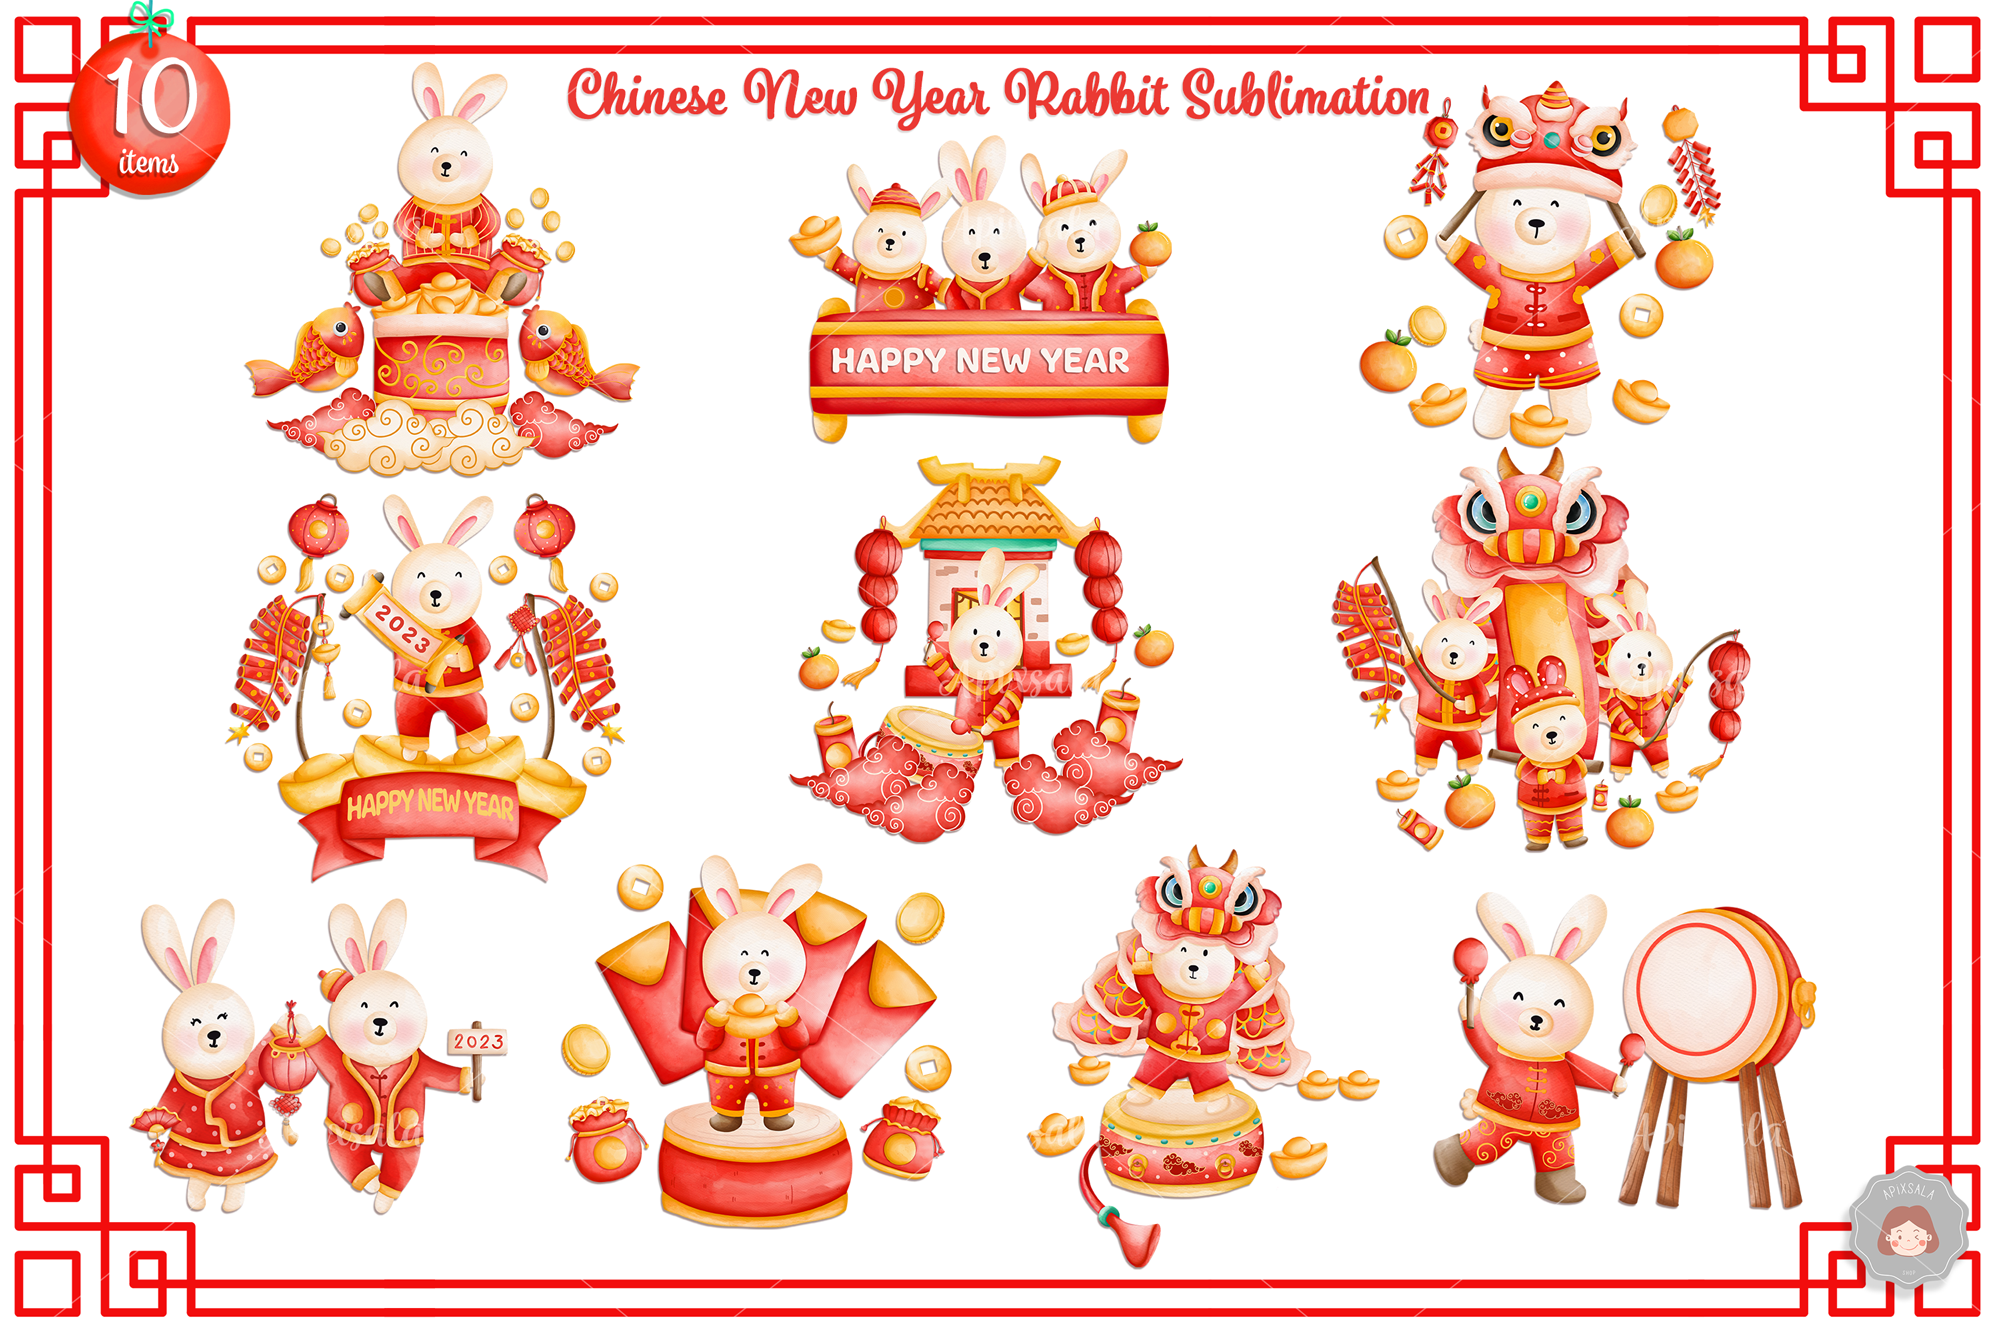 Chinese New Year 2023 - Chinese New Year - Sticker